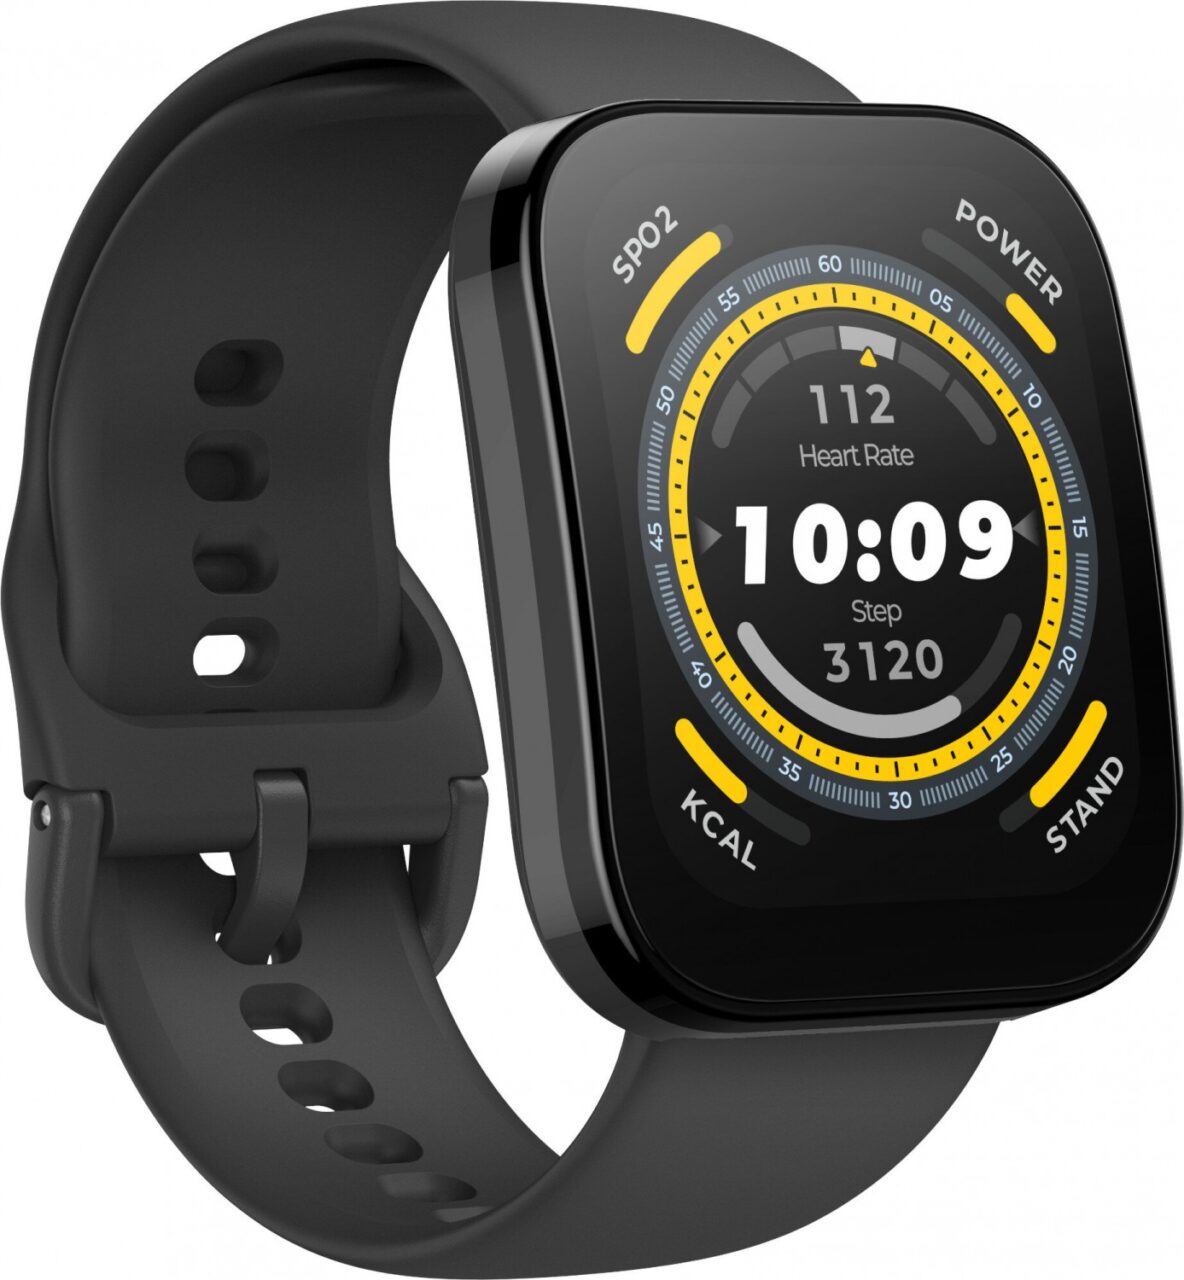 Czarny inteligentny zegarek sportowy z wyświetlonym cyfrowym interfejsem zawierającym informacje takie jak tętno, liczba kroków, poziom natlenienia krwi i spalone kalorie.